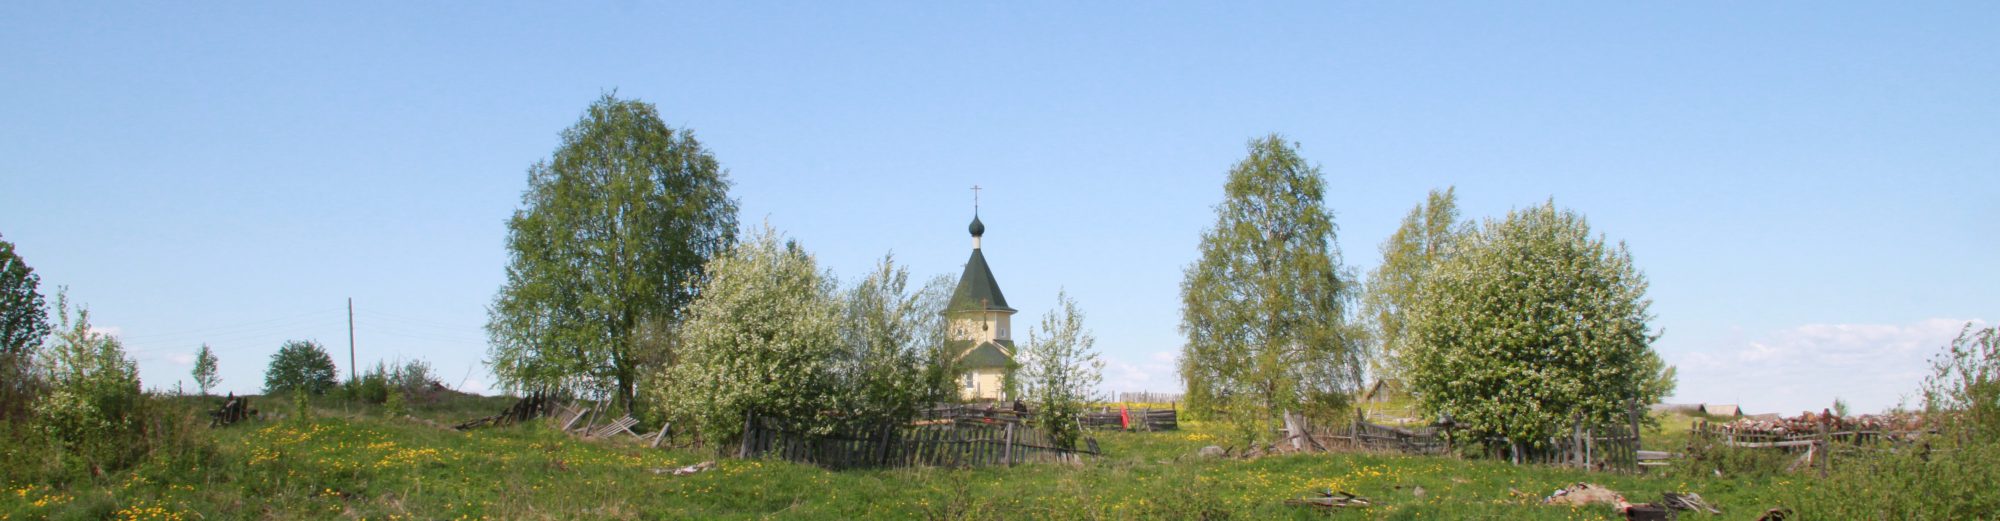 Деревня Уница